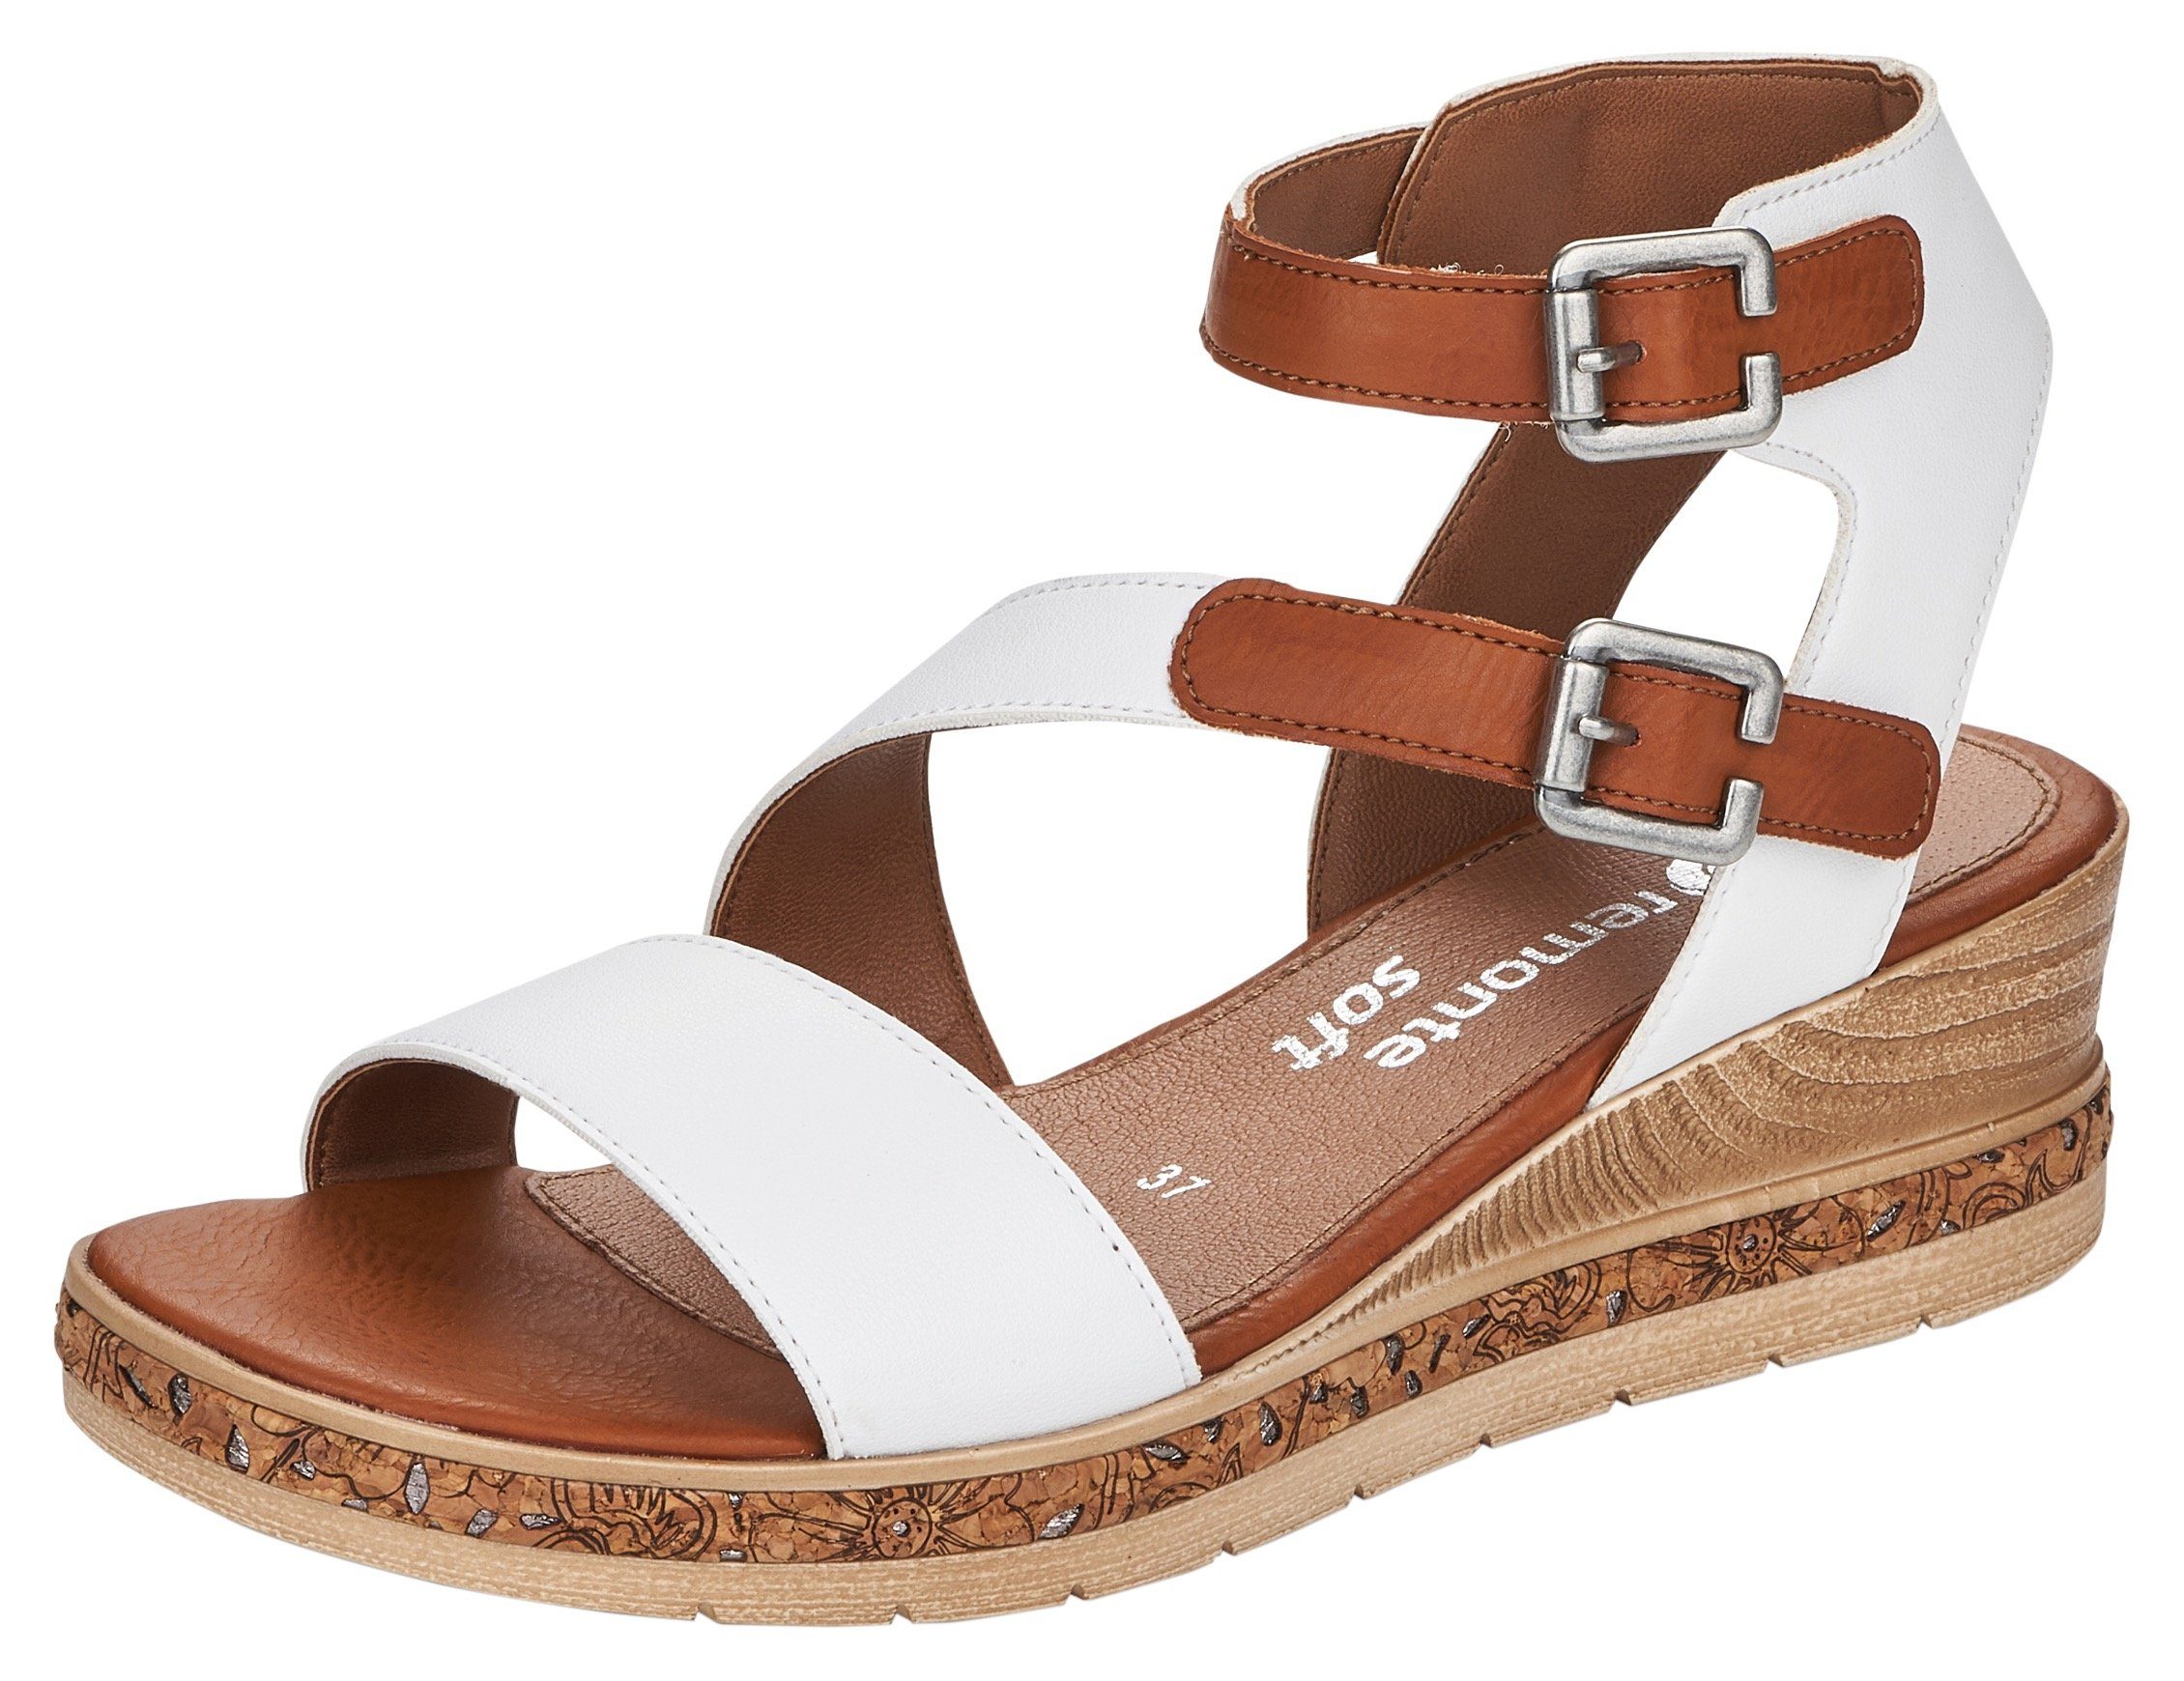 Remonte Sandalette mit Klettverschlüssen weiß-kombiniert | Sandaletten